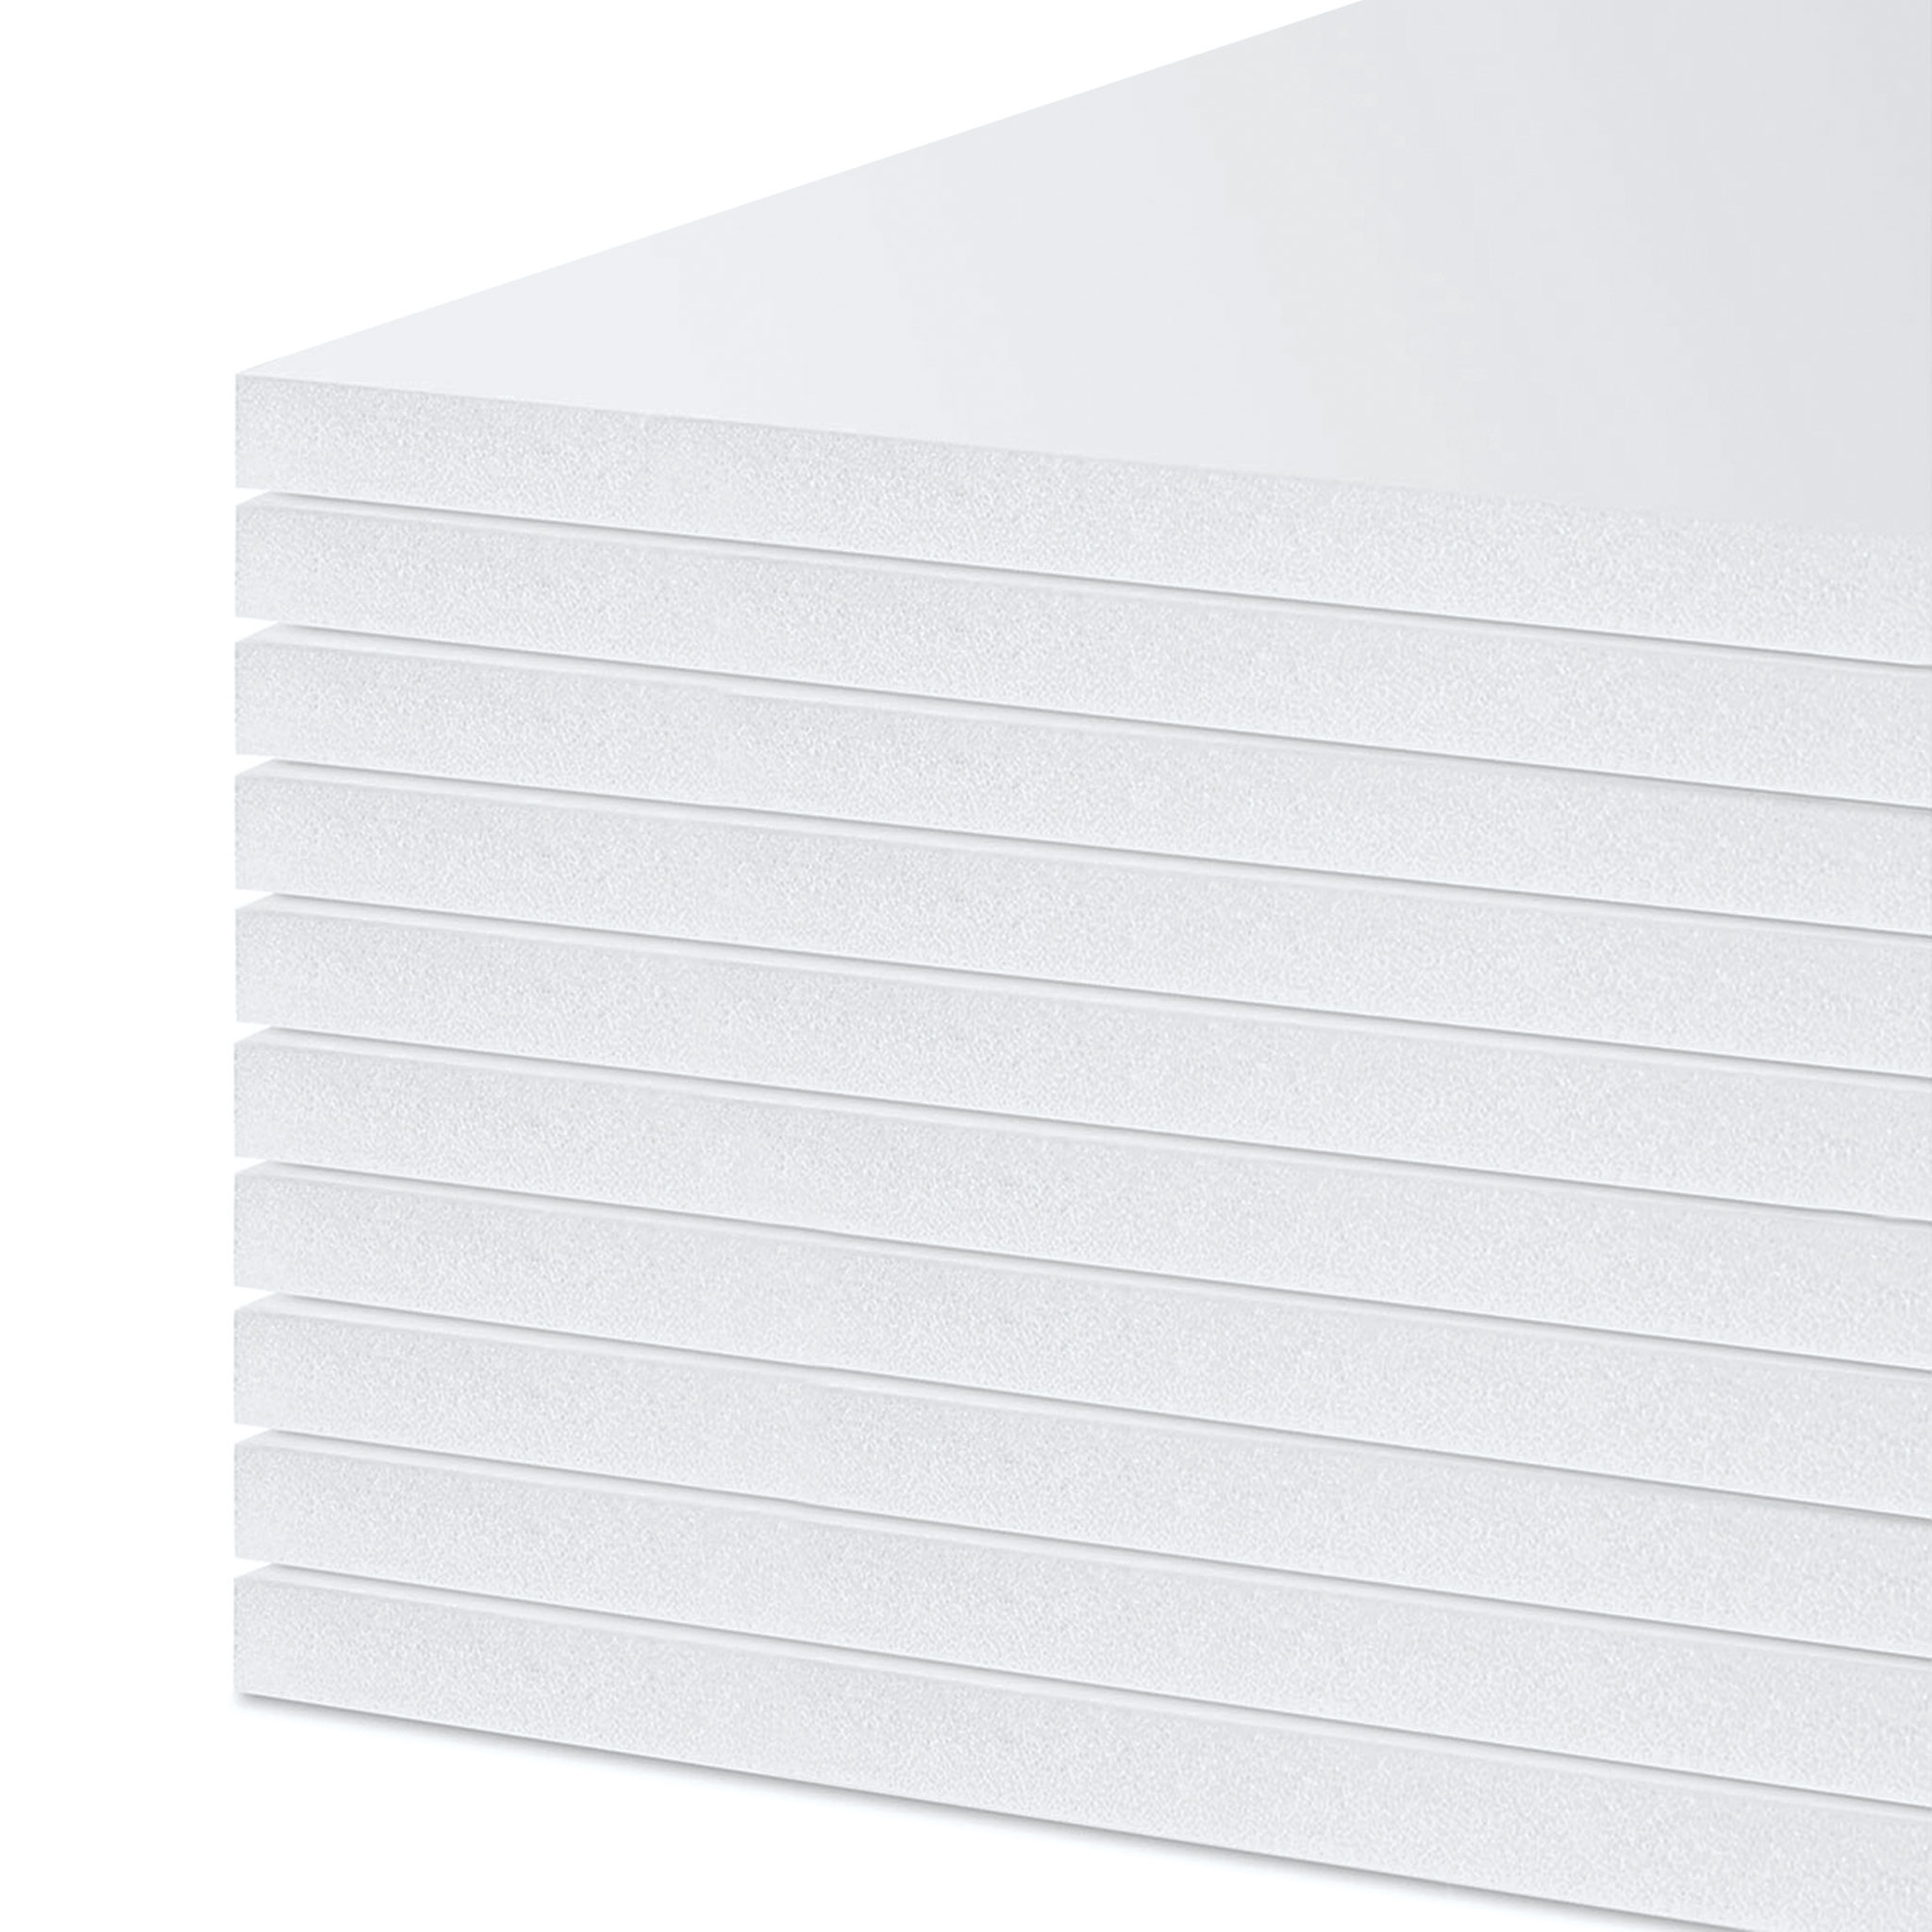 30 x 40 x 1/2 White Foam Board 25 pack